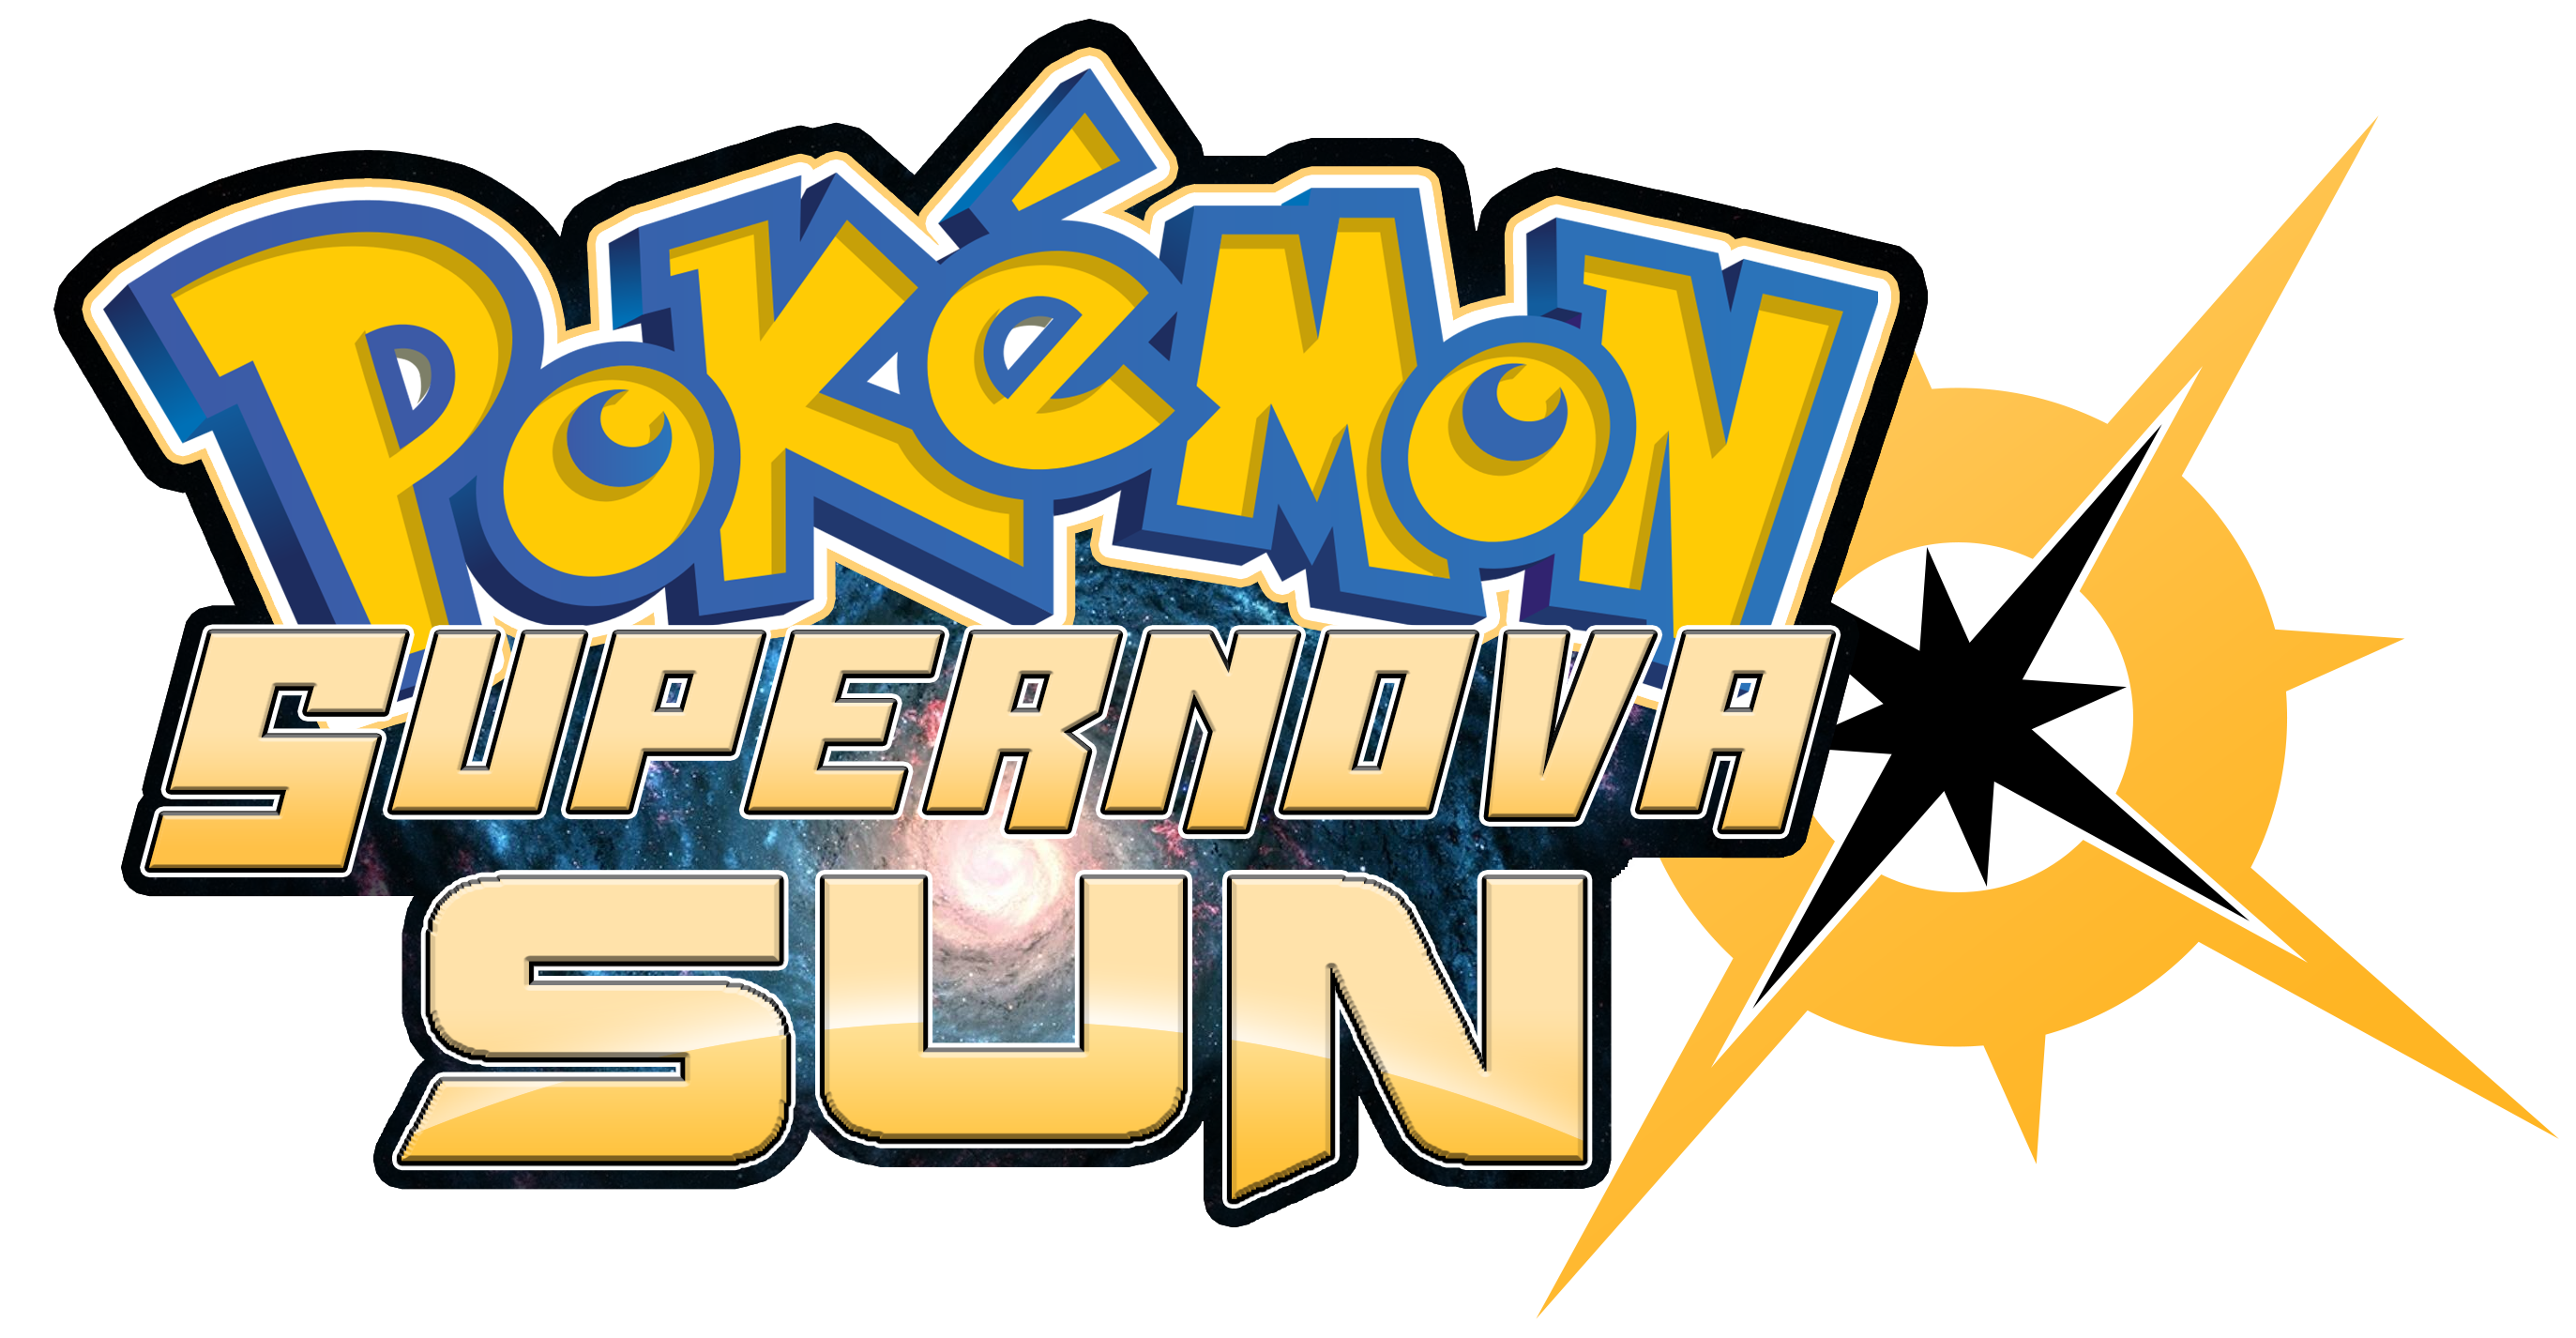 pokemon sun moon logo